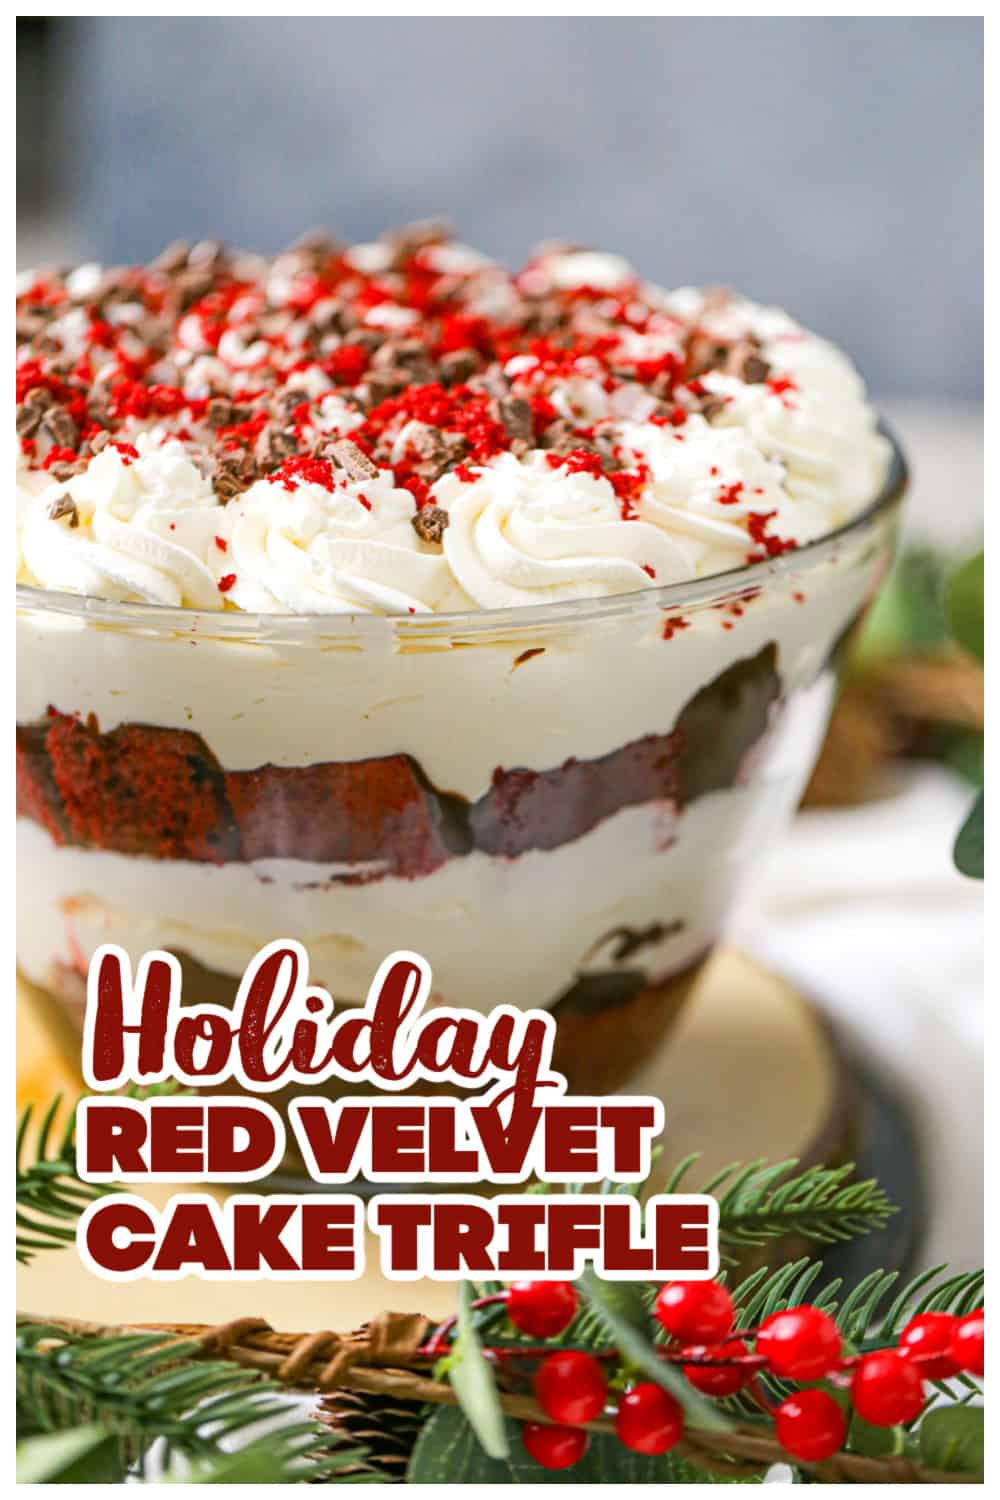 Red Velvet Cake Trifle Dessert recipe